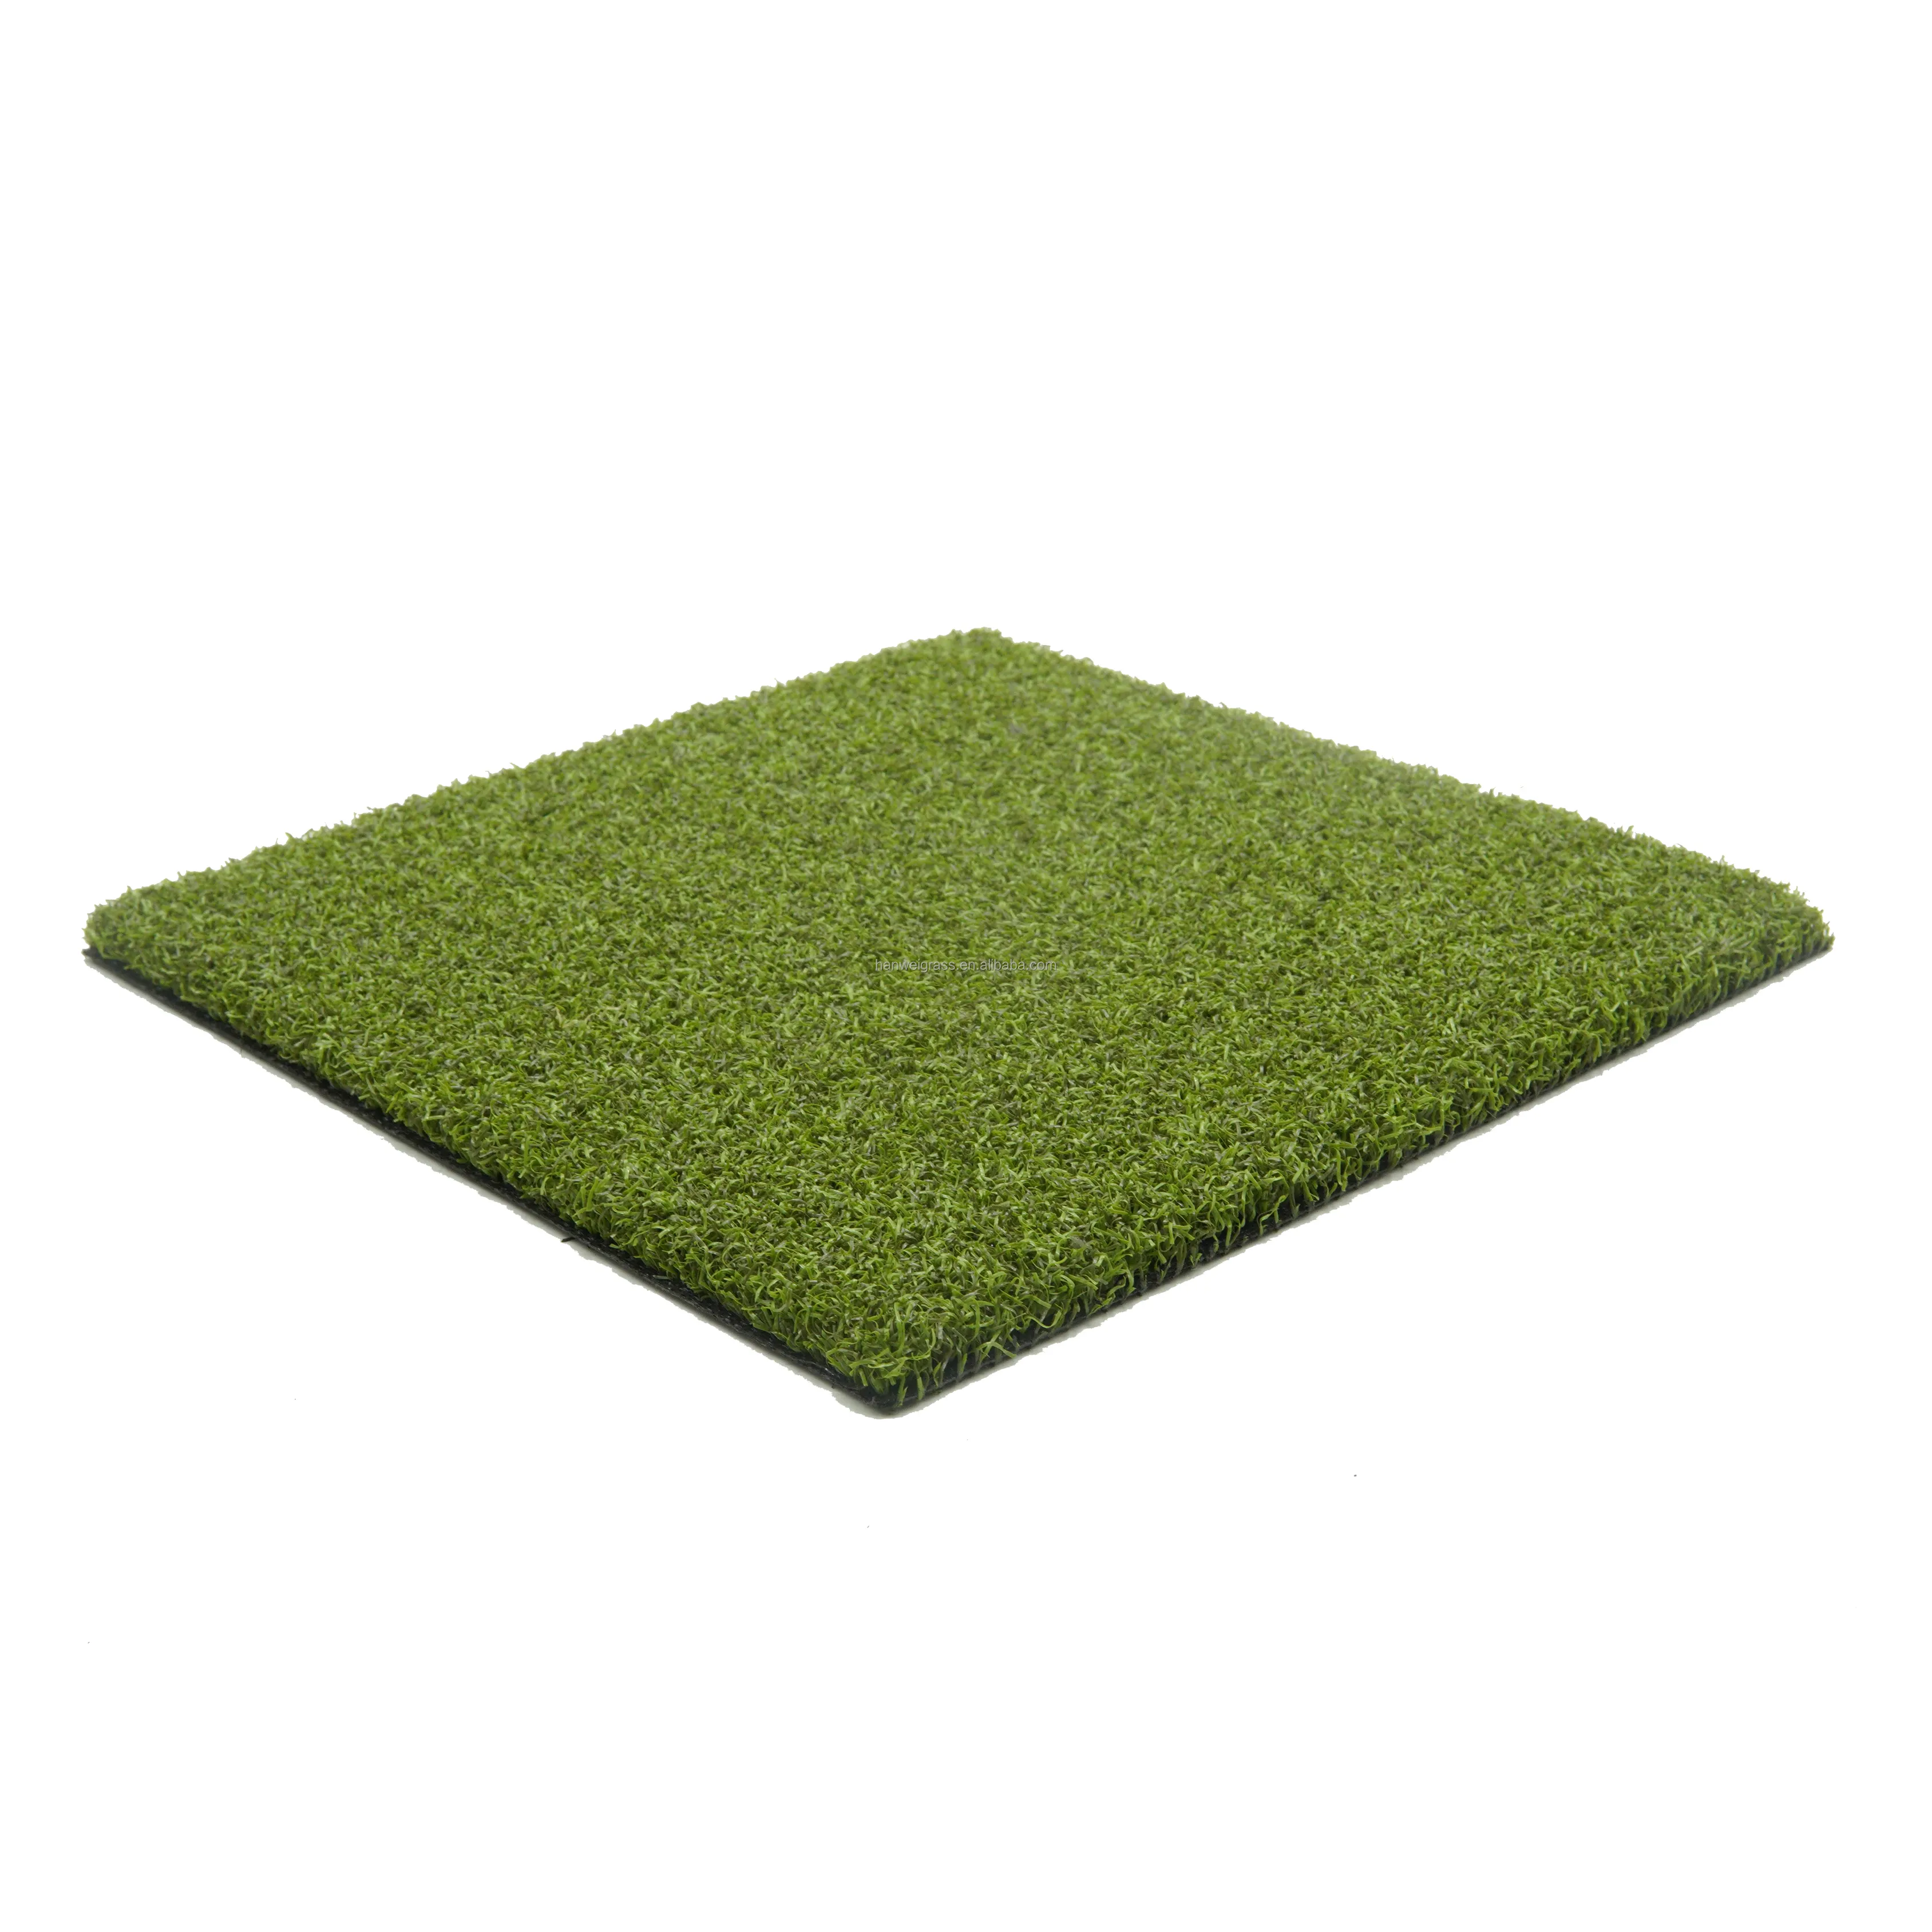 Tapete de golfe para ambientes internos Hanwei, tapete sintético de alta qualidade para esportes como tênis e futebol, verde para golfe